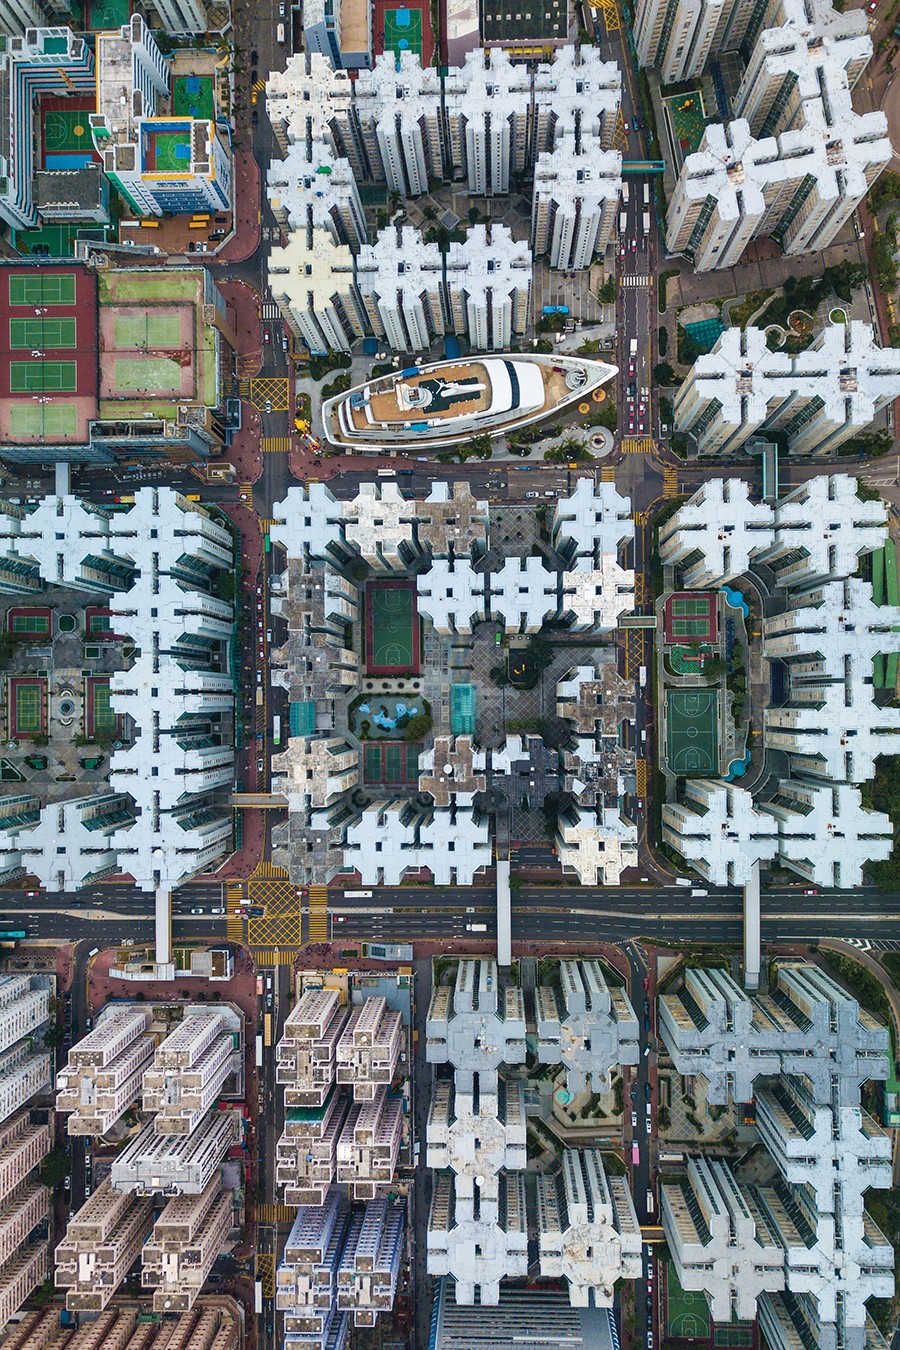 Hong kong, China  Às vezes, subir ao topo do prédio não basta: Koopmans fez esta imagem pilotando um drone no alto de um edifício. No clique se destaca o shopping center em forma de navio no distrito de Kowloon. (Foto: Ryan Koopmans)